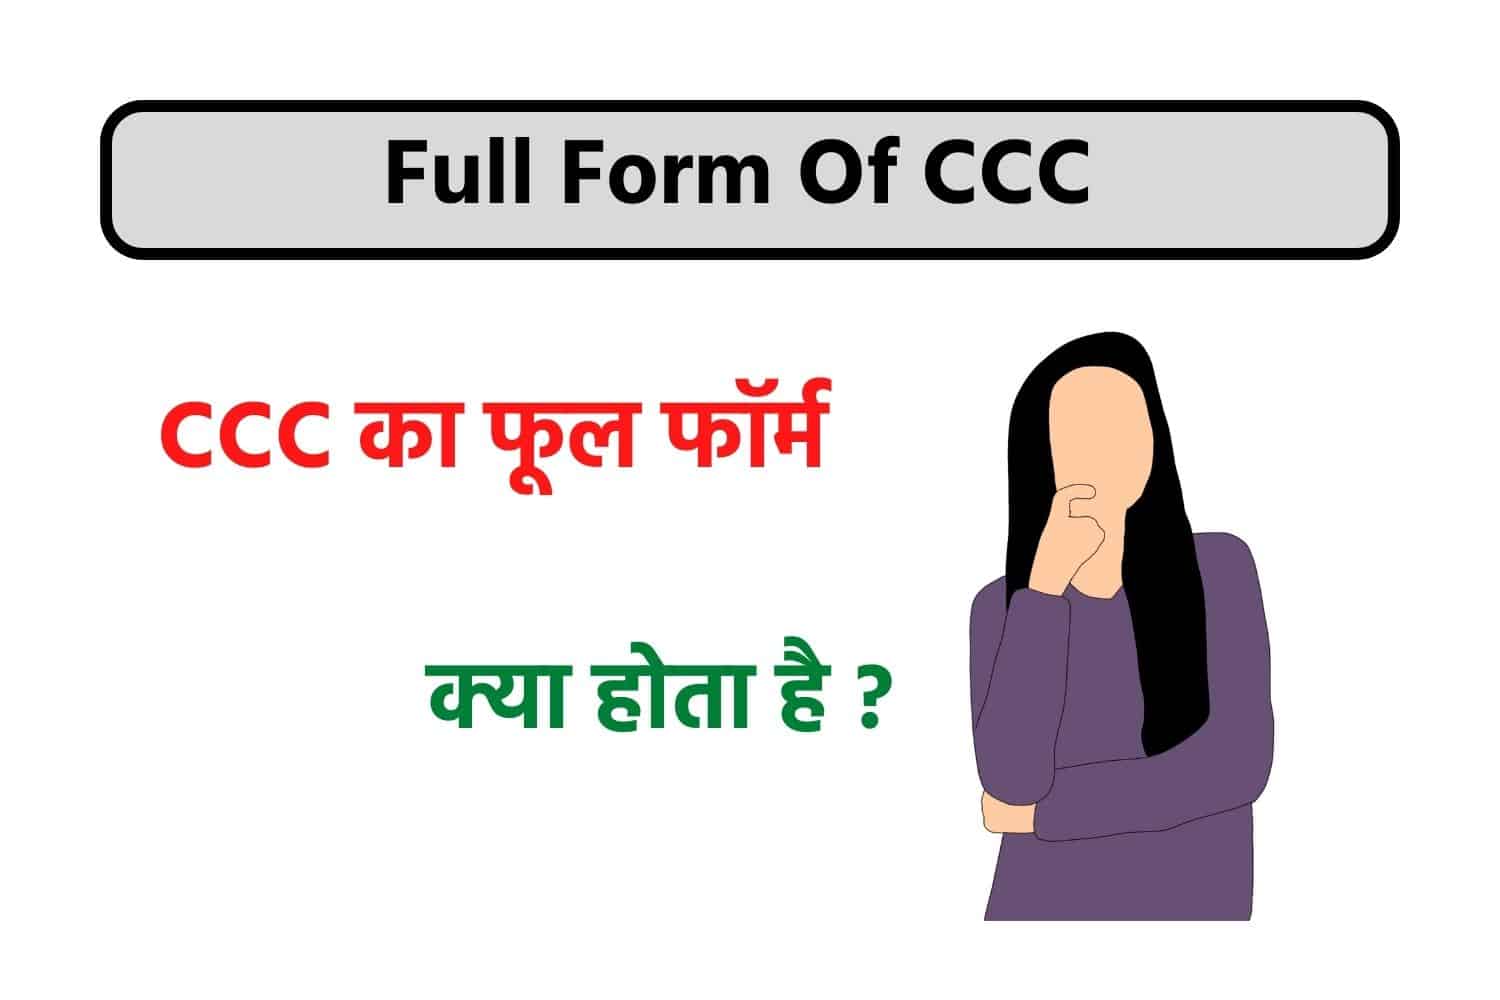 CCC Full Form : CCC का फुल फॉर्म क्या है?